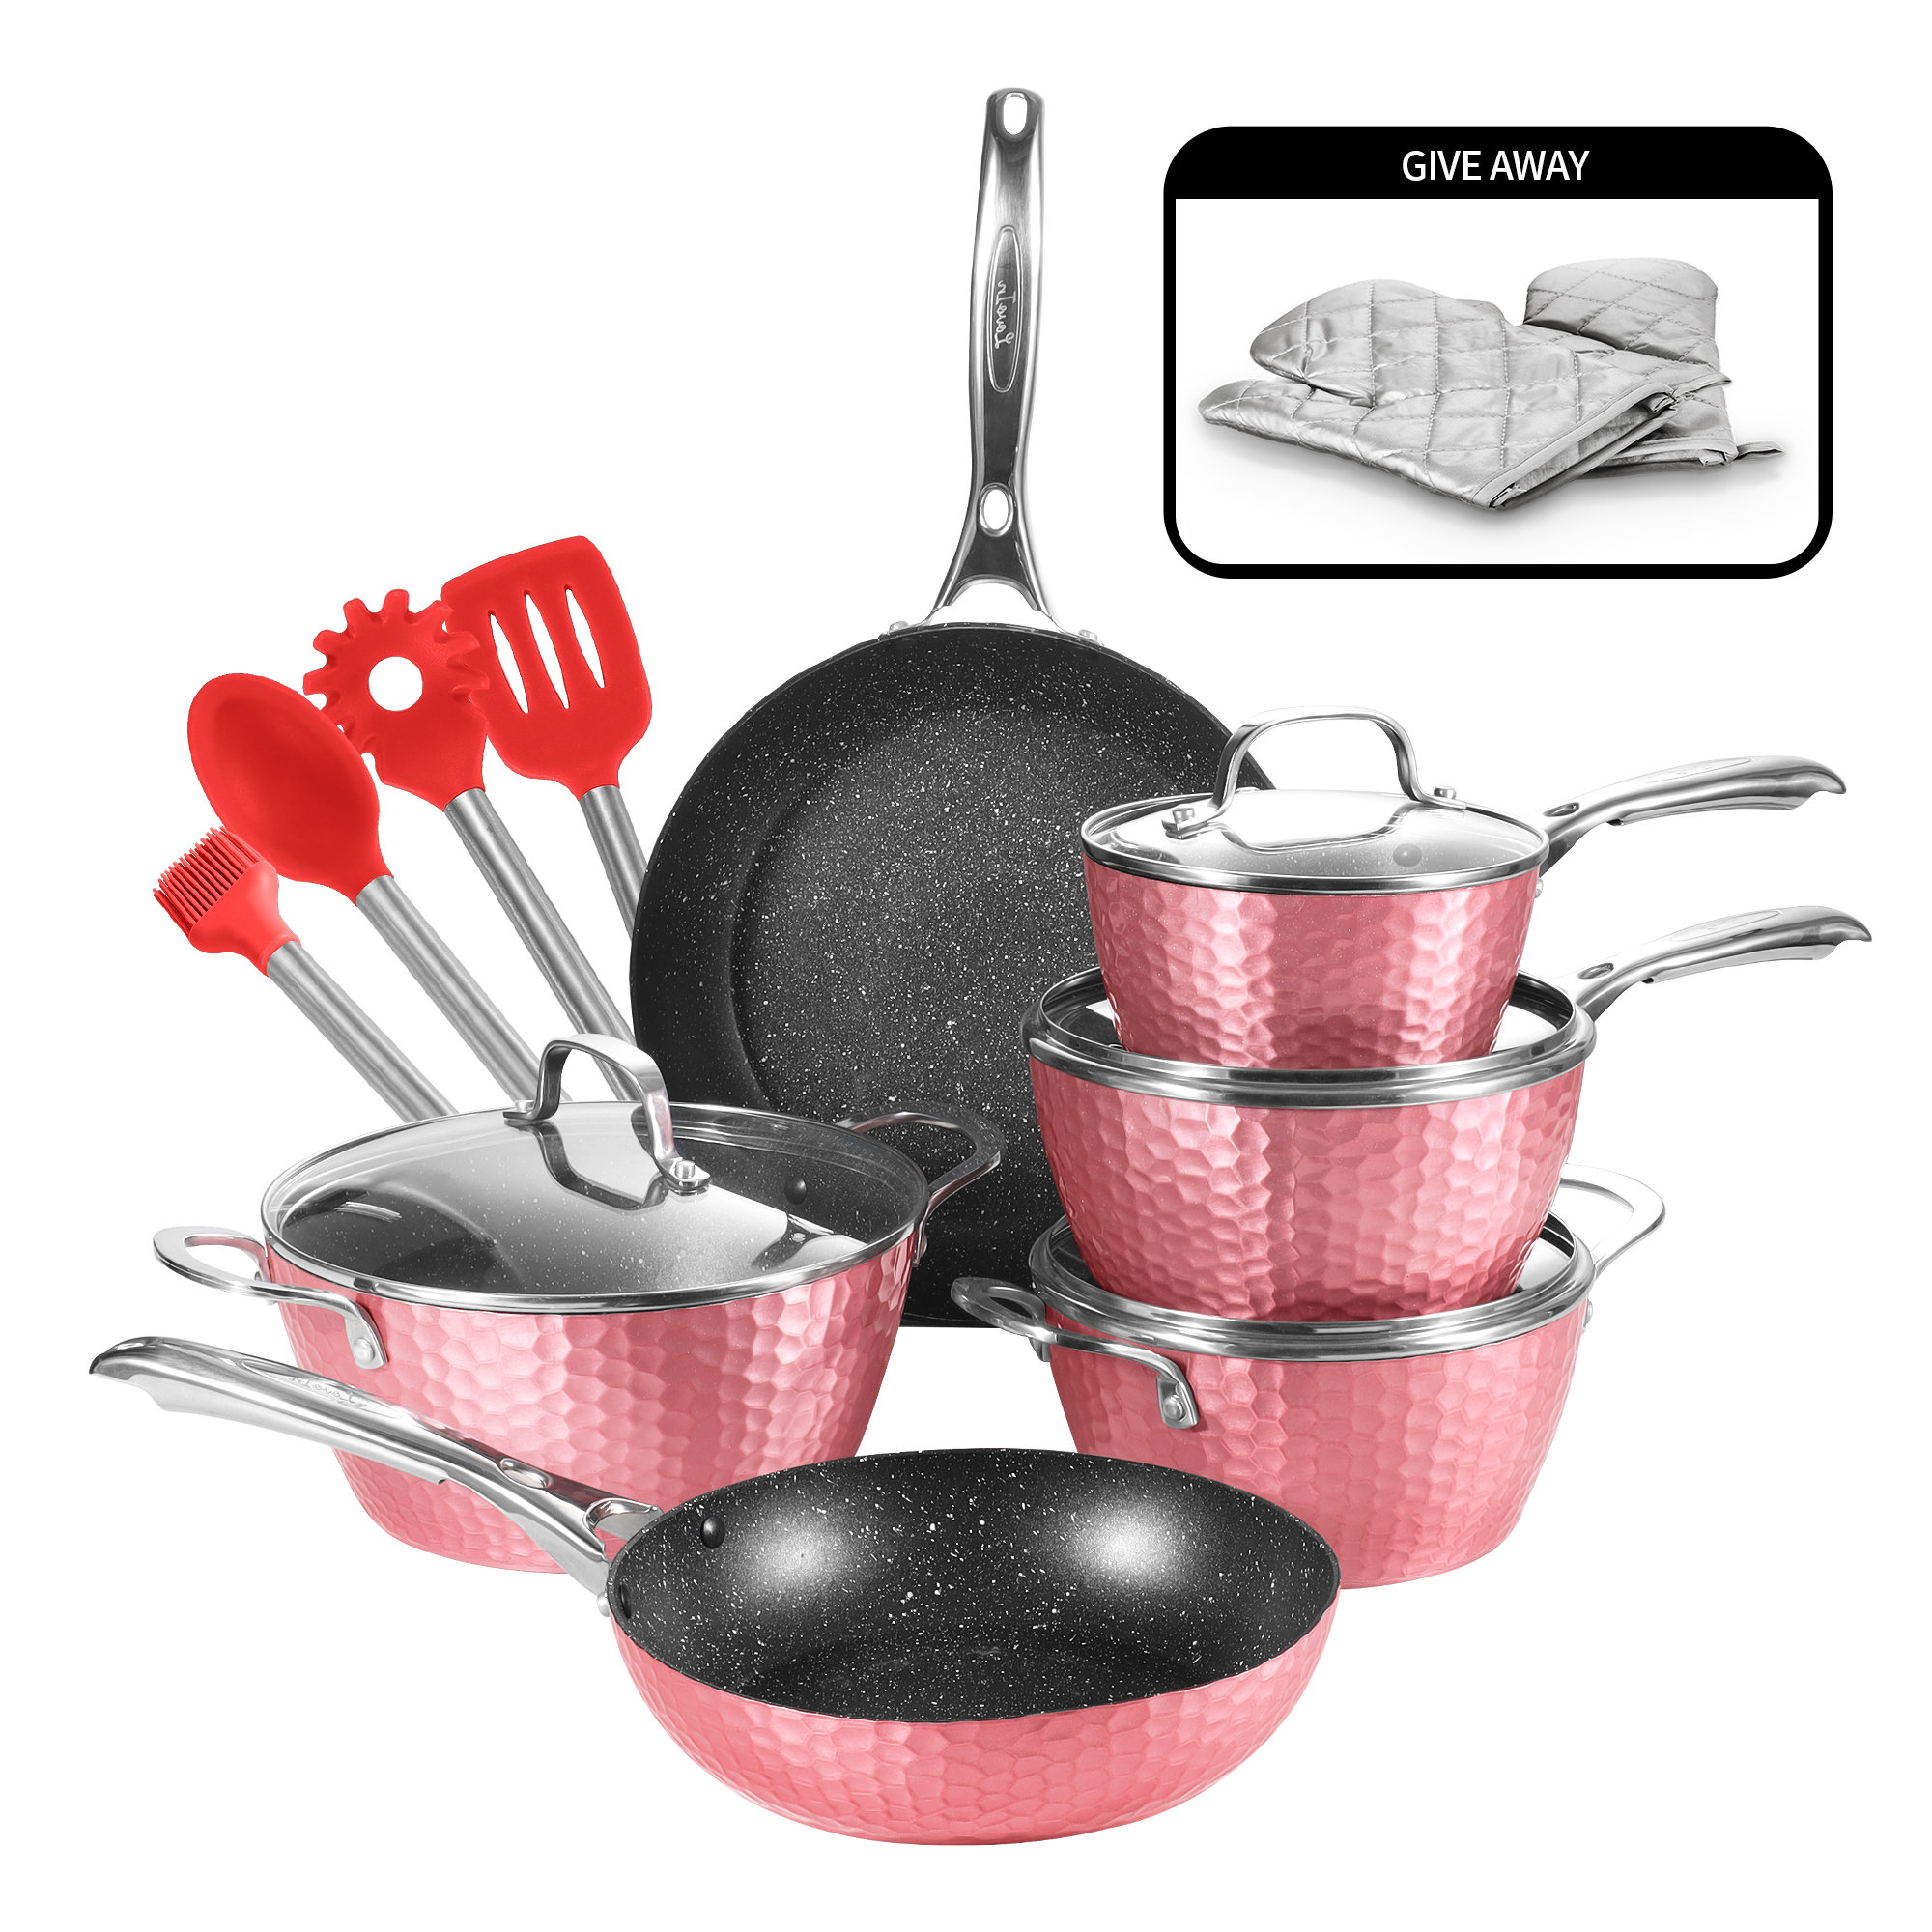 https://assets.wfcdn.com/im/73618444/compr-r85/2497/249700095/15-piece-non-stick-aluminum-cookware-set.jpg